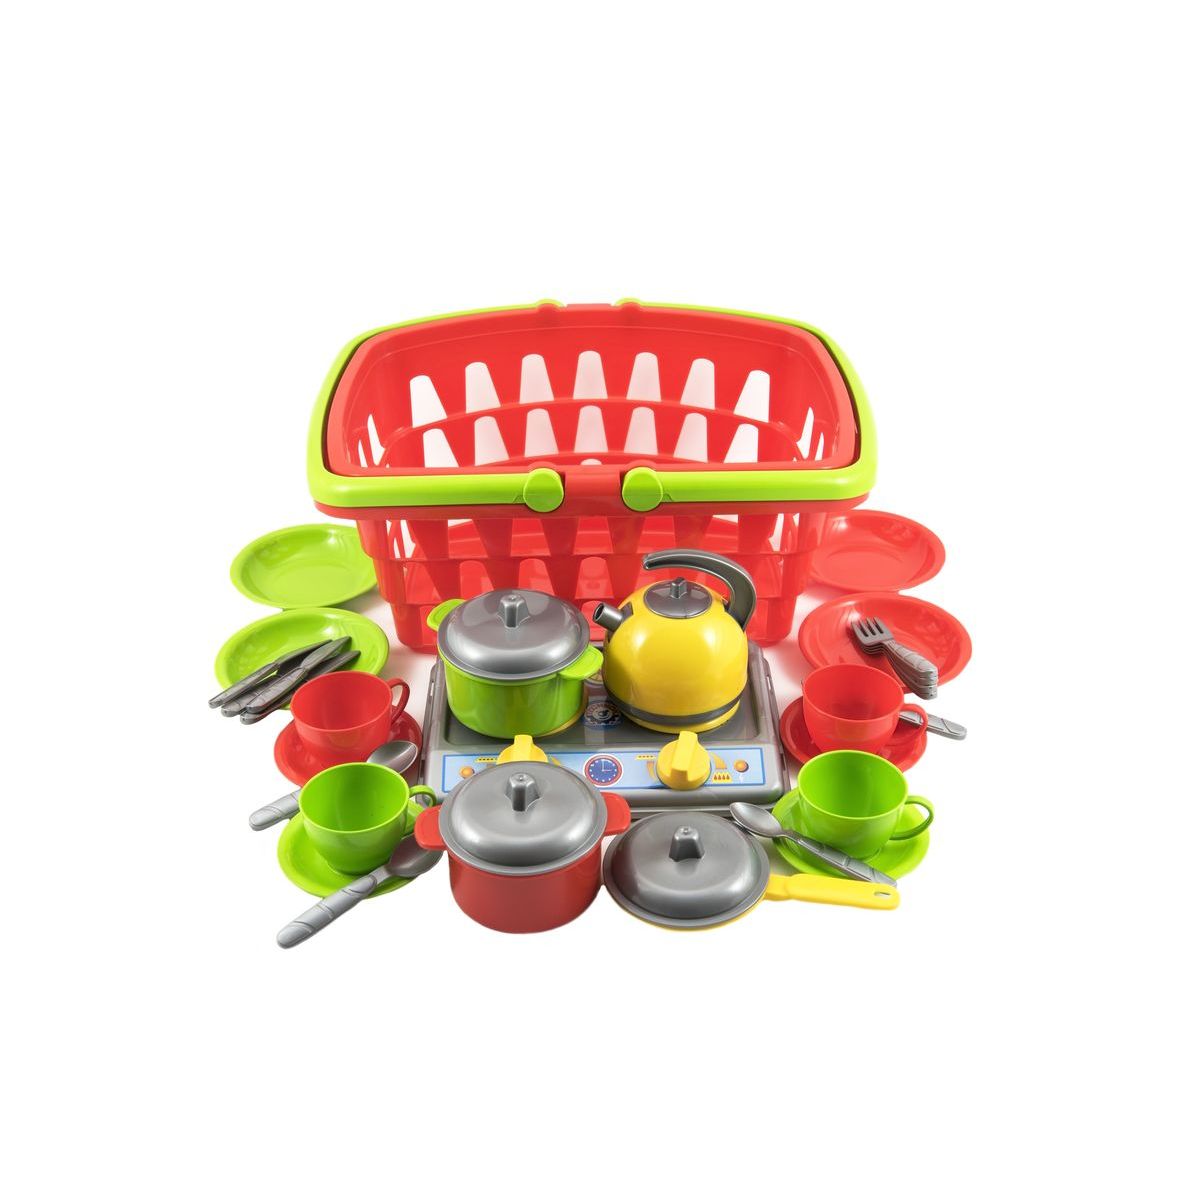 Plastový nákupní košík plast se sadou nádobí a vařičem